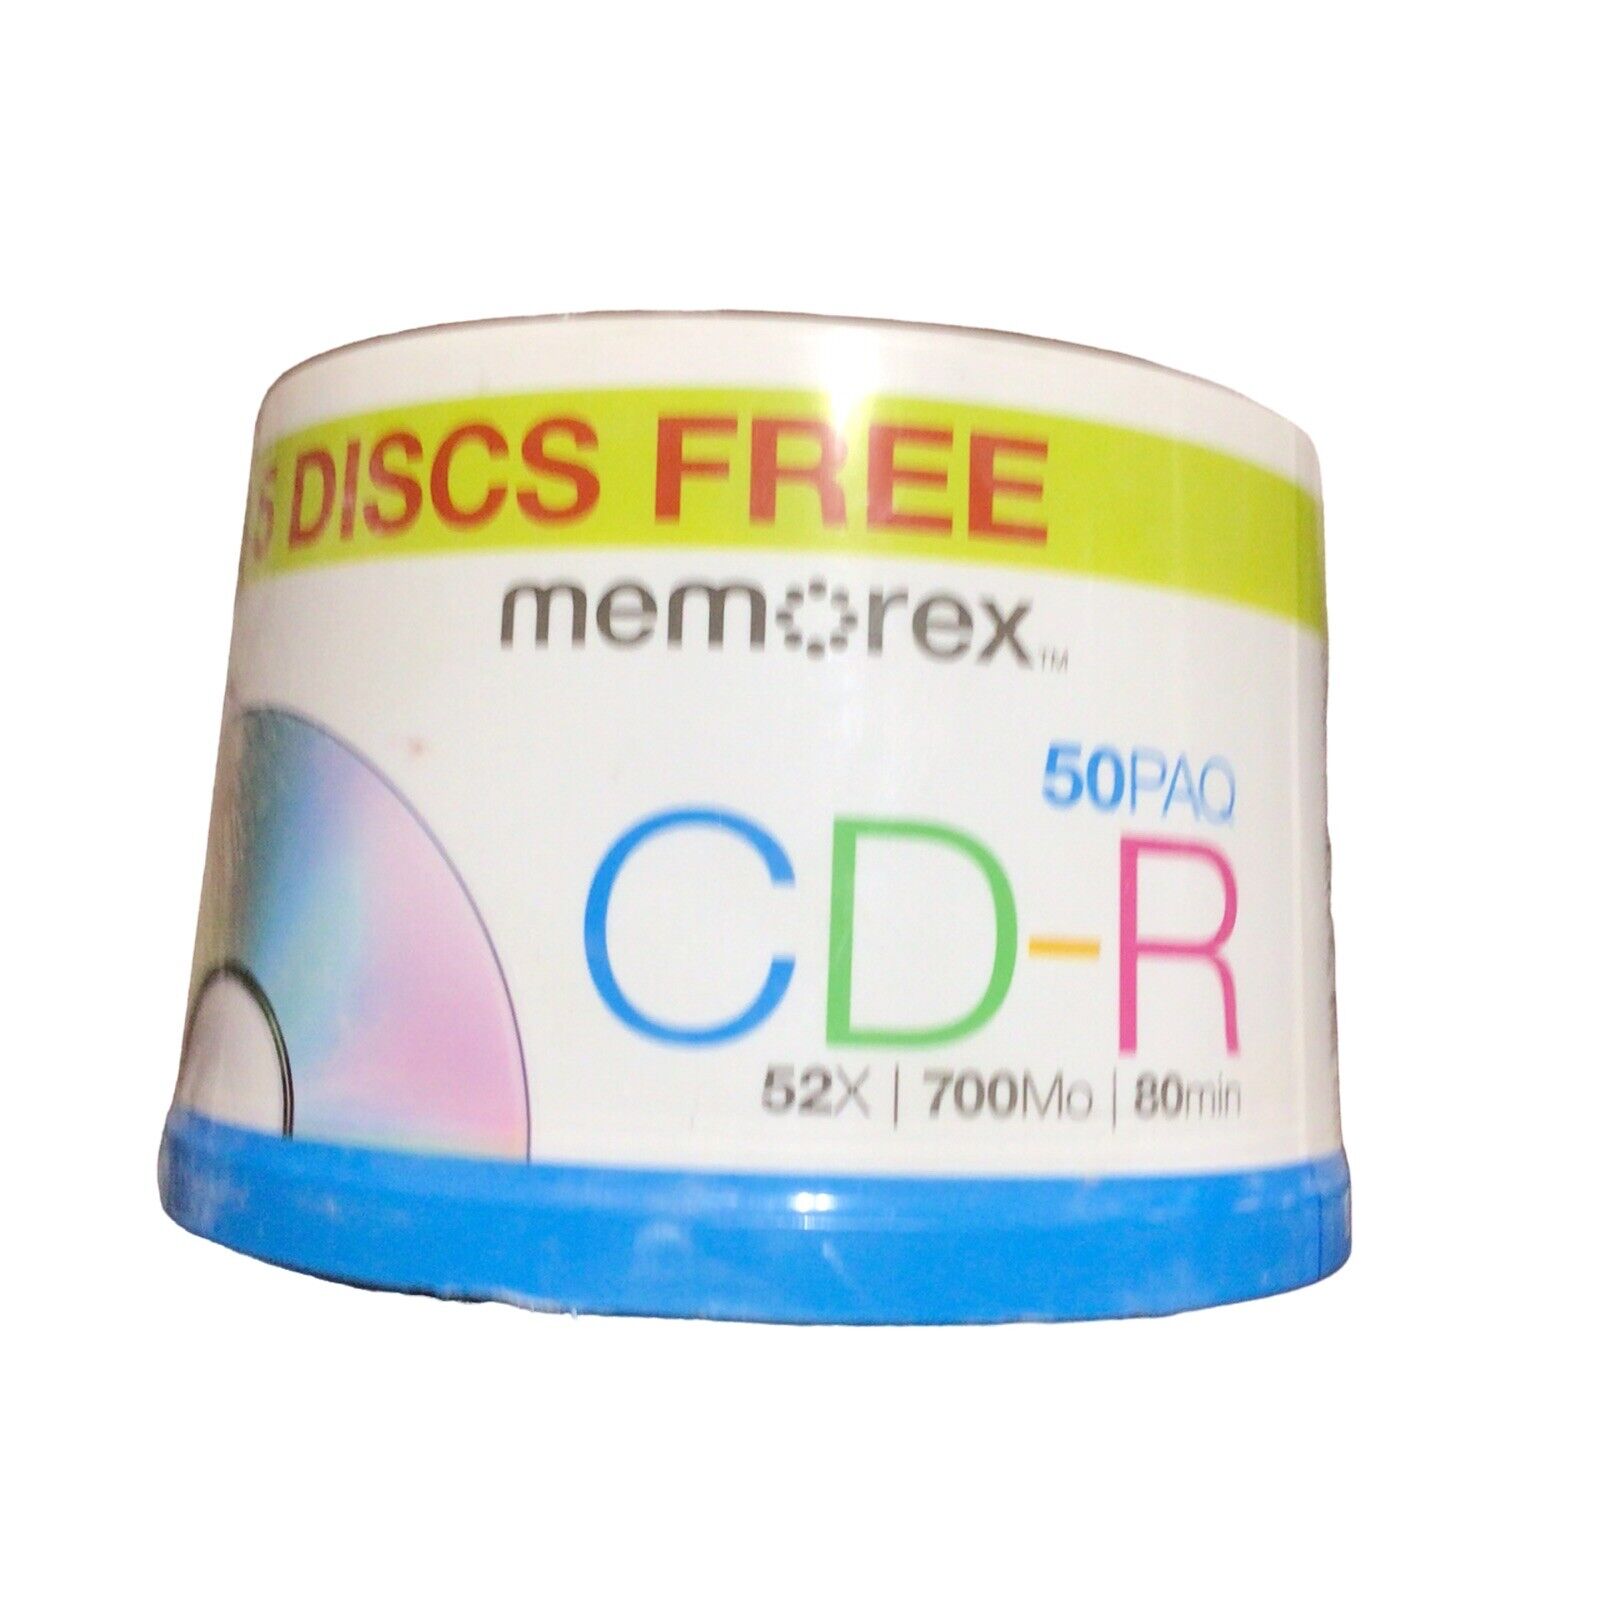 Memorex CD-R - 50 Pack Spindle 52x 700 MB 80 Min Recordable CD-R NEW-5 cd bonus